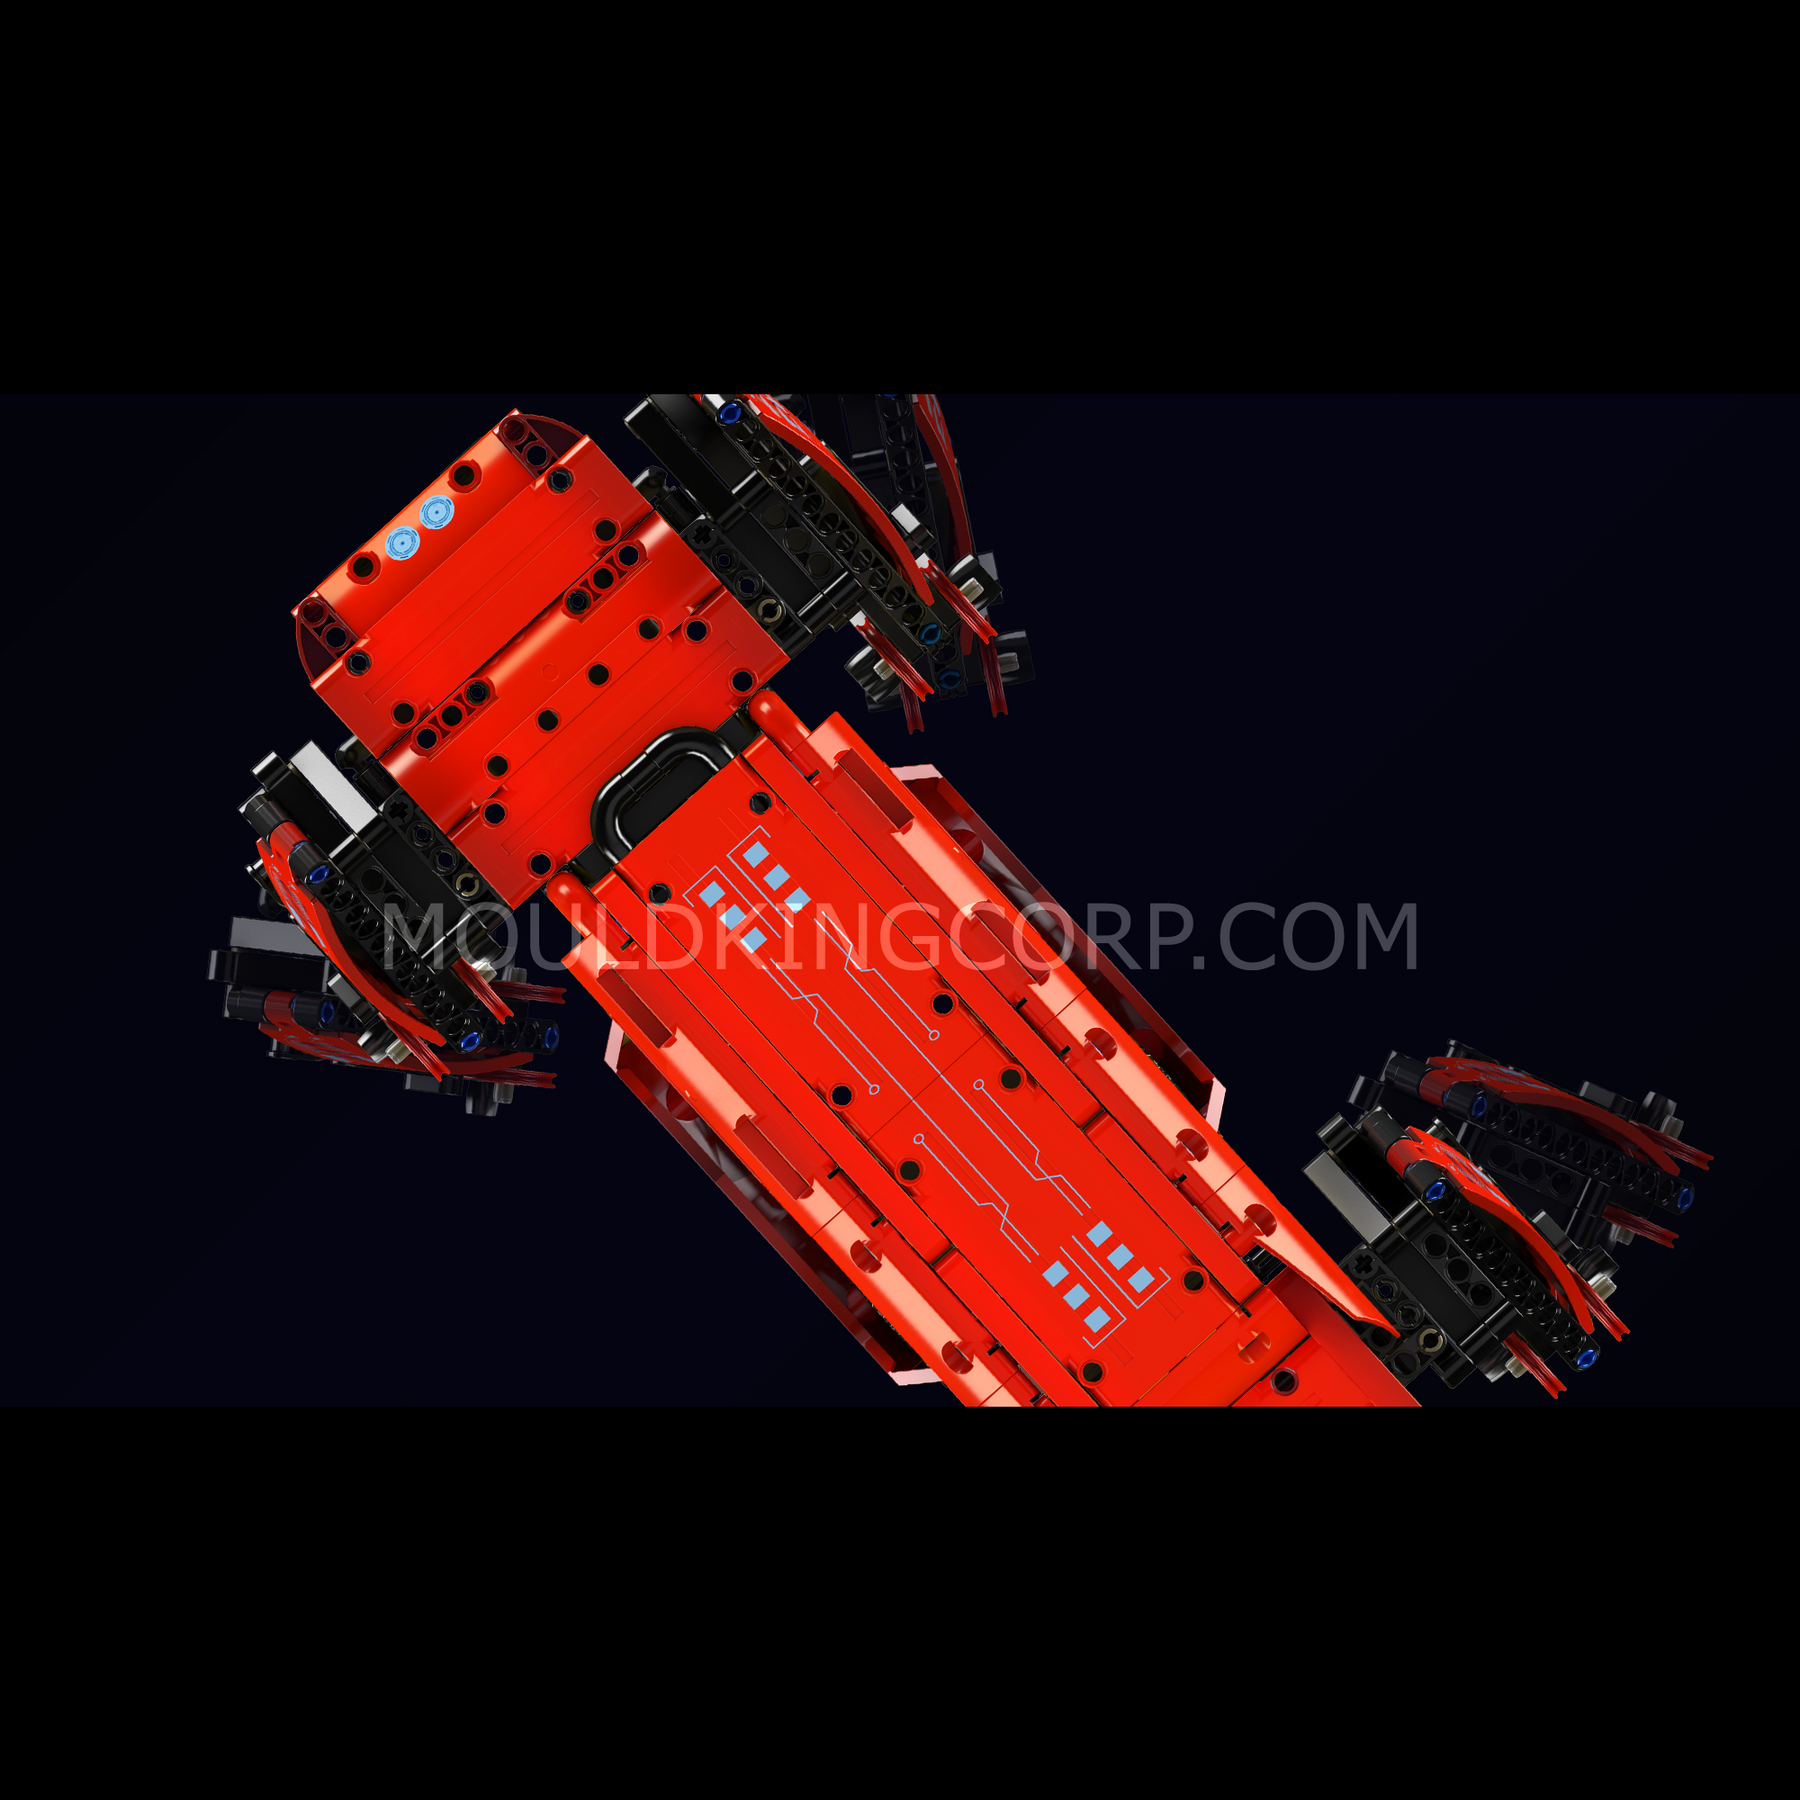 MOULD KING Rouge Robot chien robot bloc jouet pour enfants MOC 15067